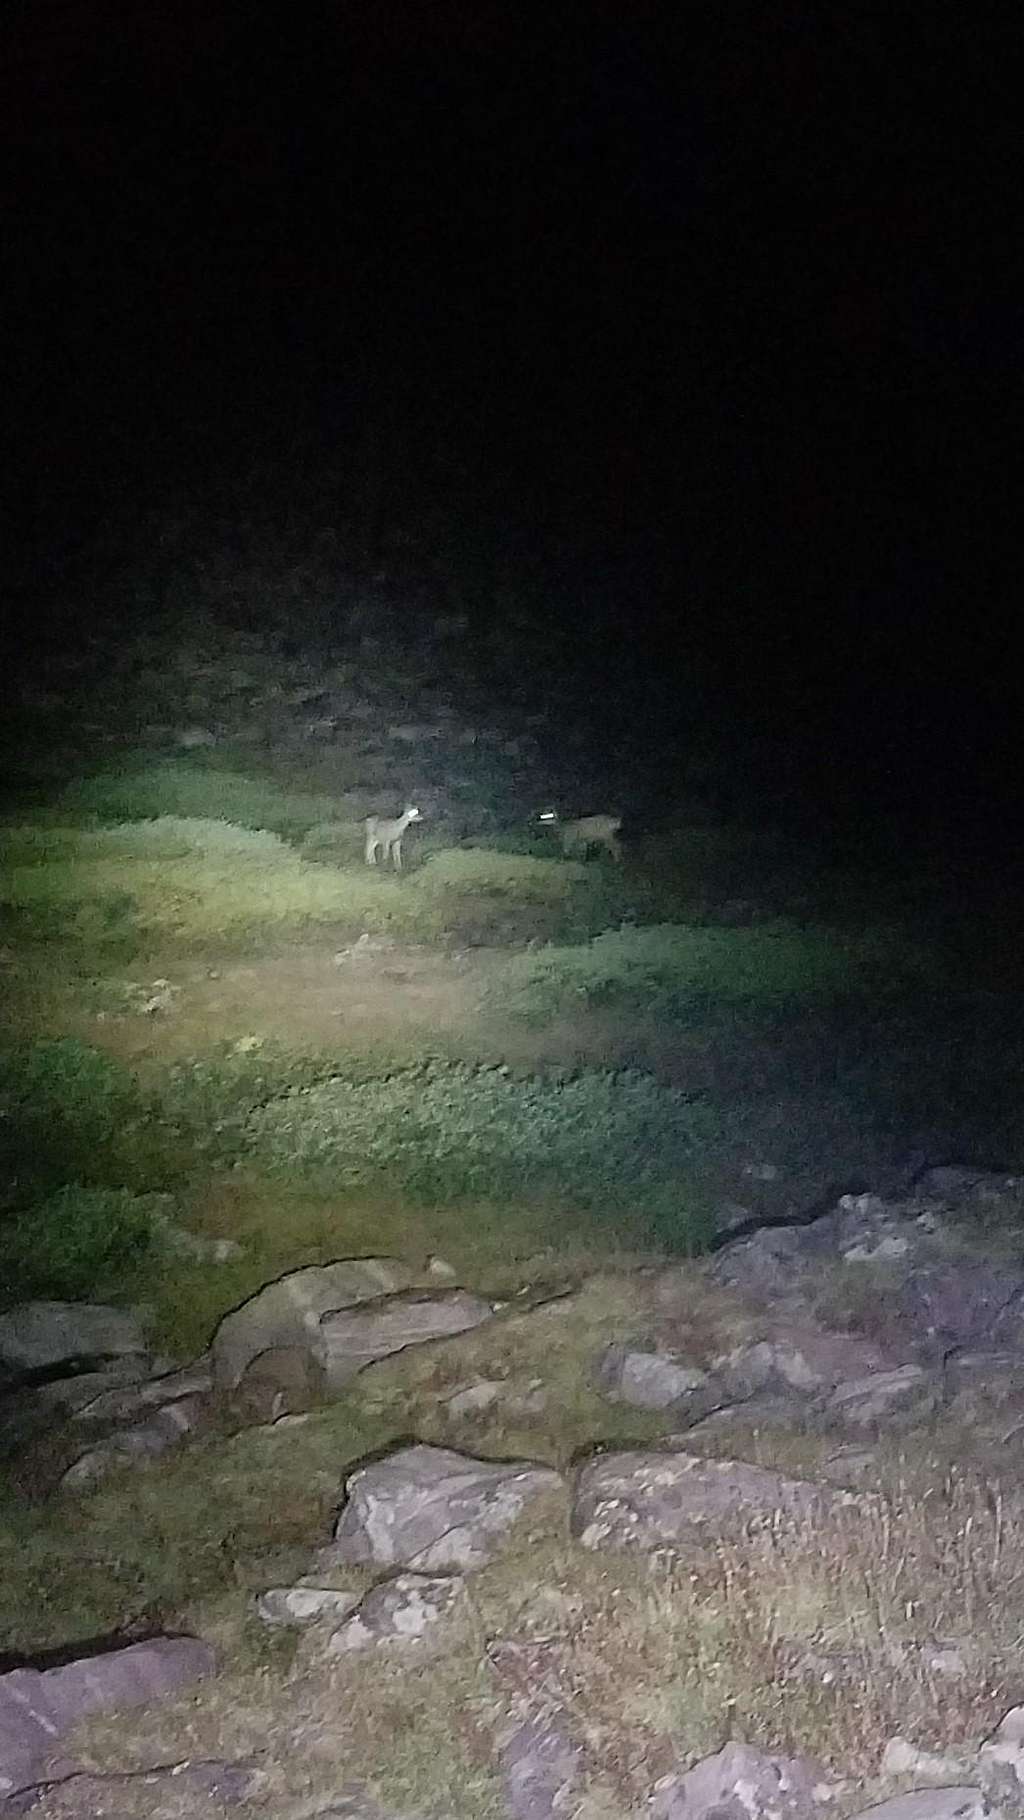 Deer at King's Peak!